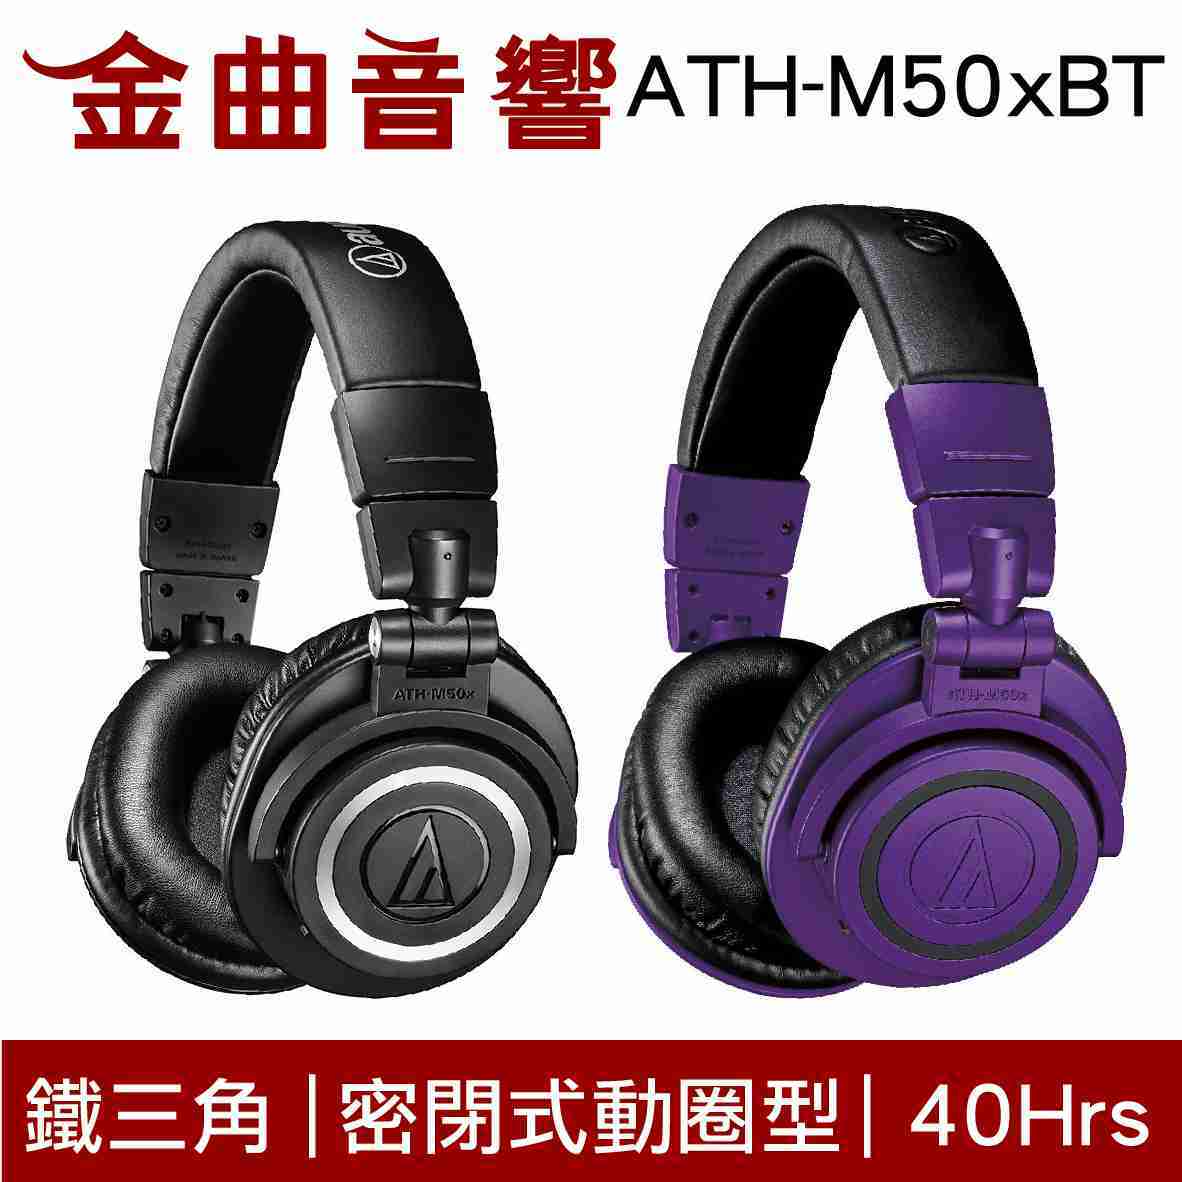 鐵三角 ATH-M50xBT 耳罩式 藍牙 耳機 藍牙5.0 m50xbt M50xBT PB | 金曲音響